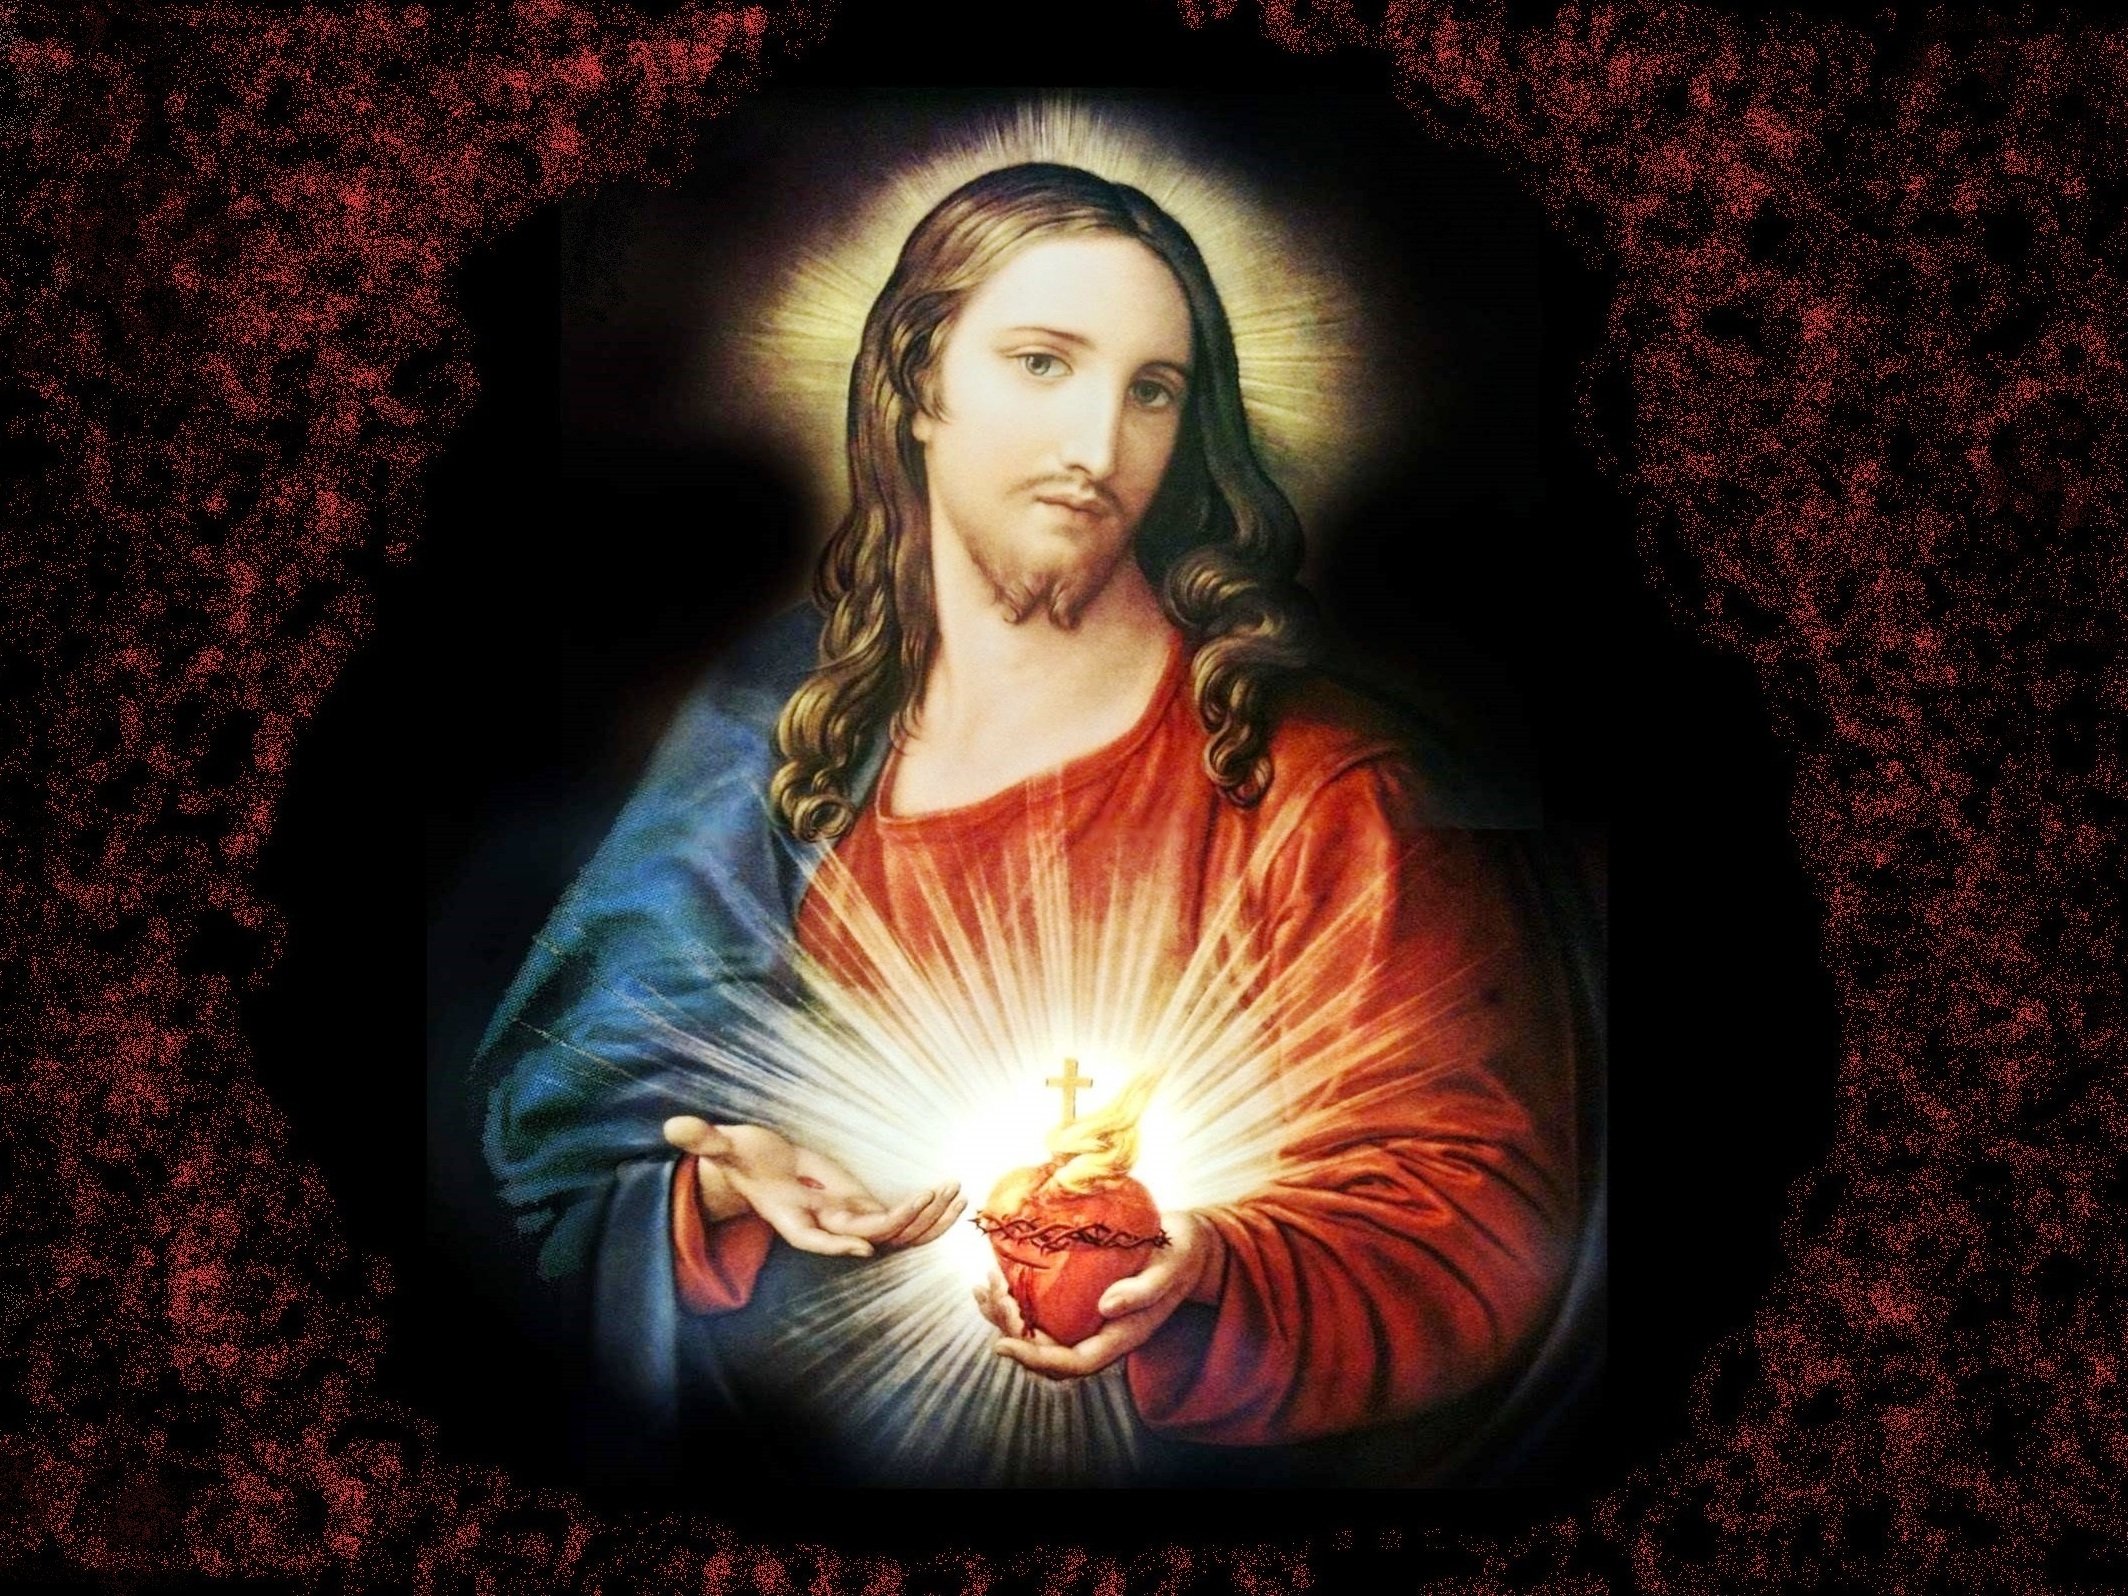 Venerdì 11 giugno si celebra la festa del Sacro Cuore di Gesù